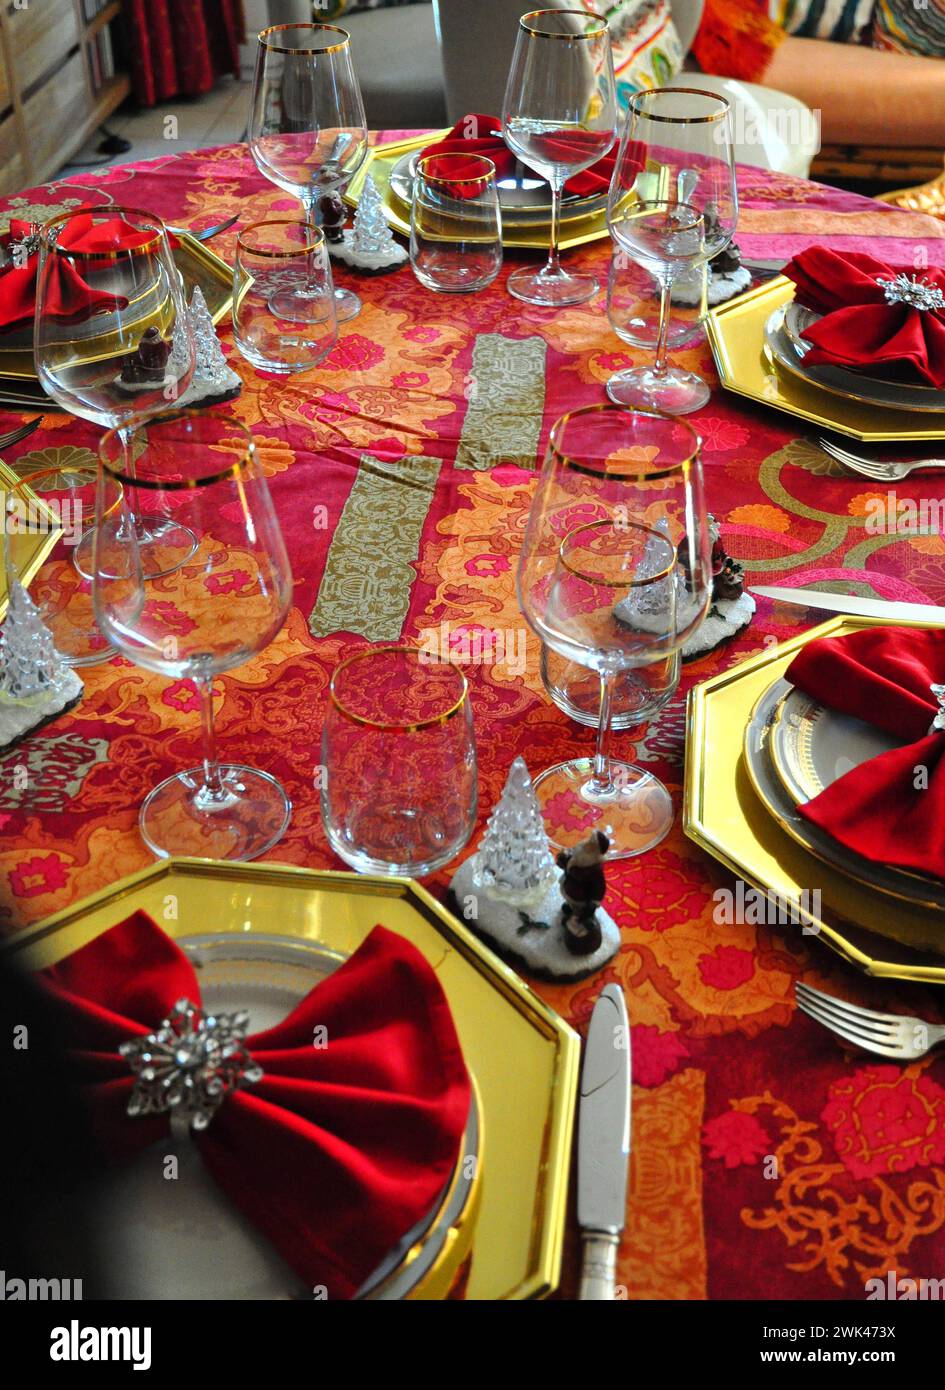 Set de table festive pour Noël Banque D'Images